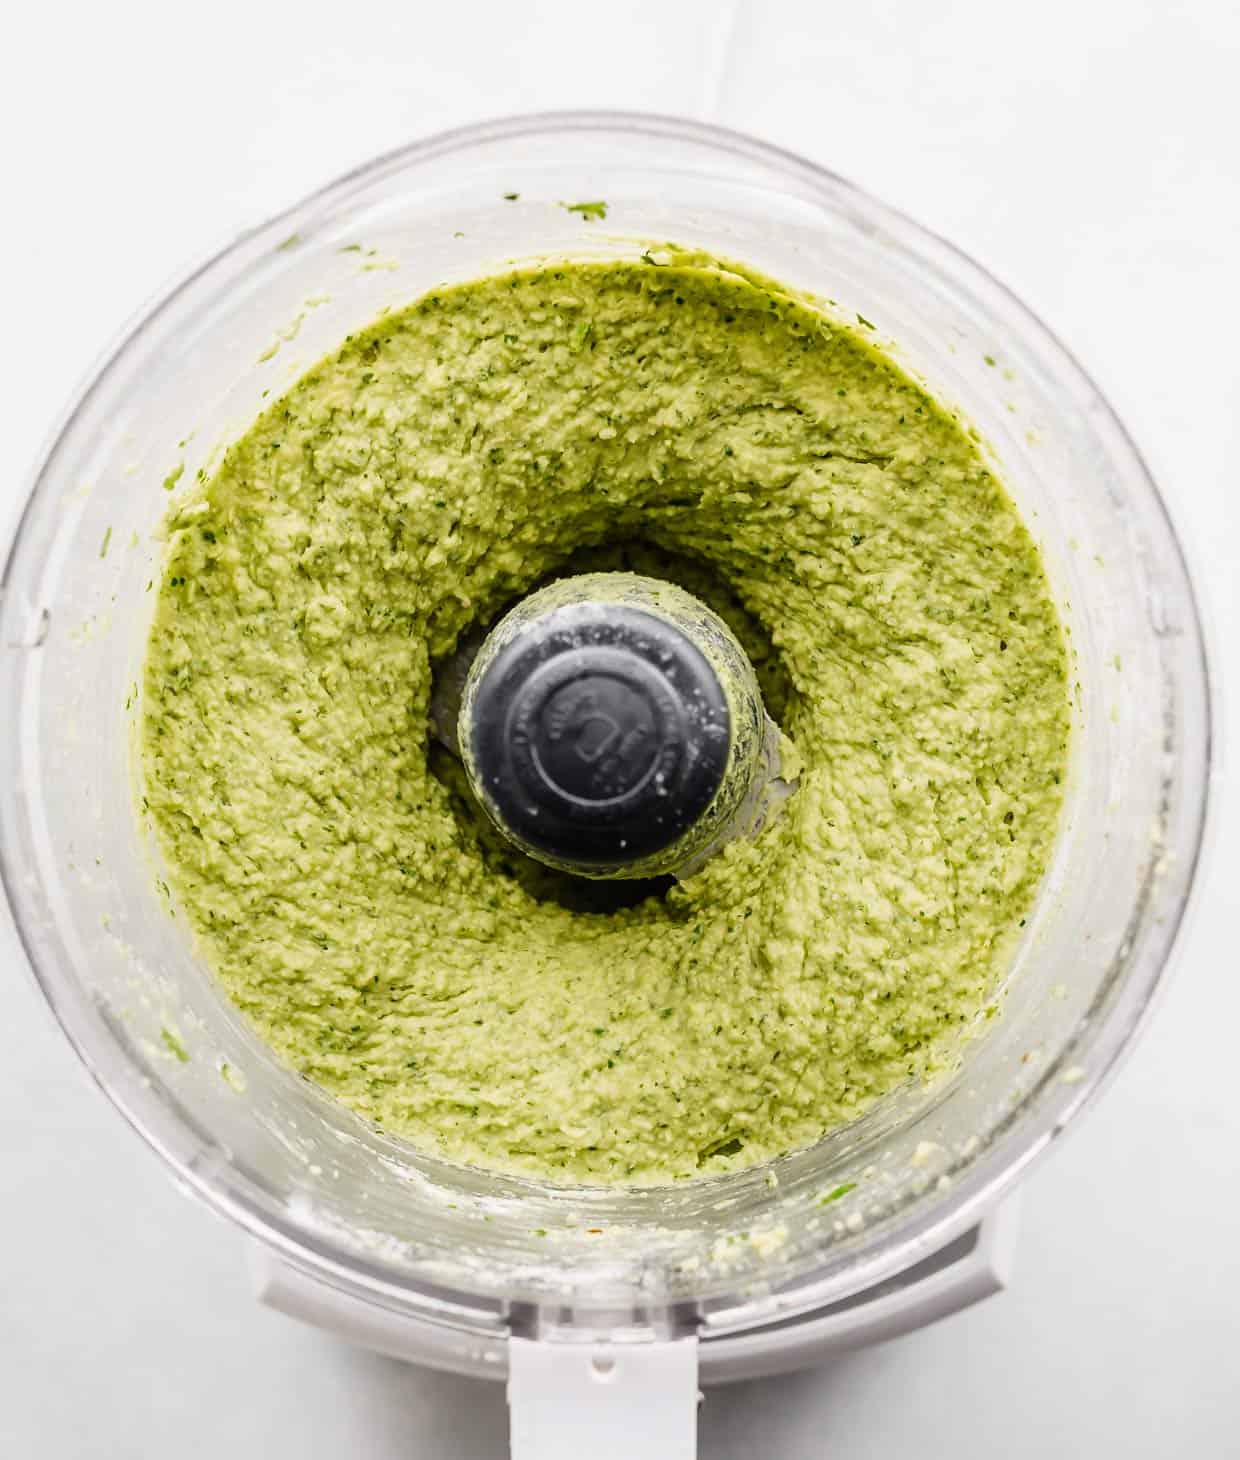 Pureed green falafel mixture in a food processor.